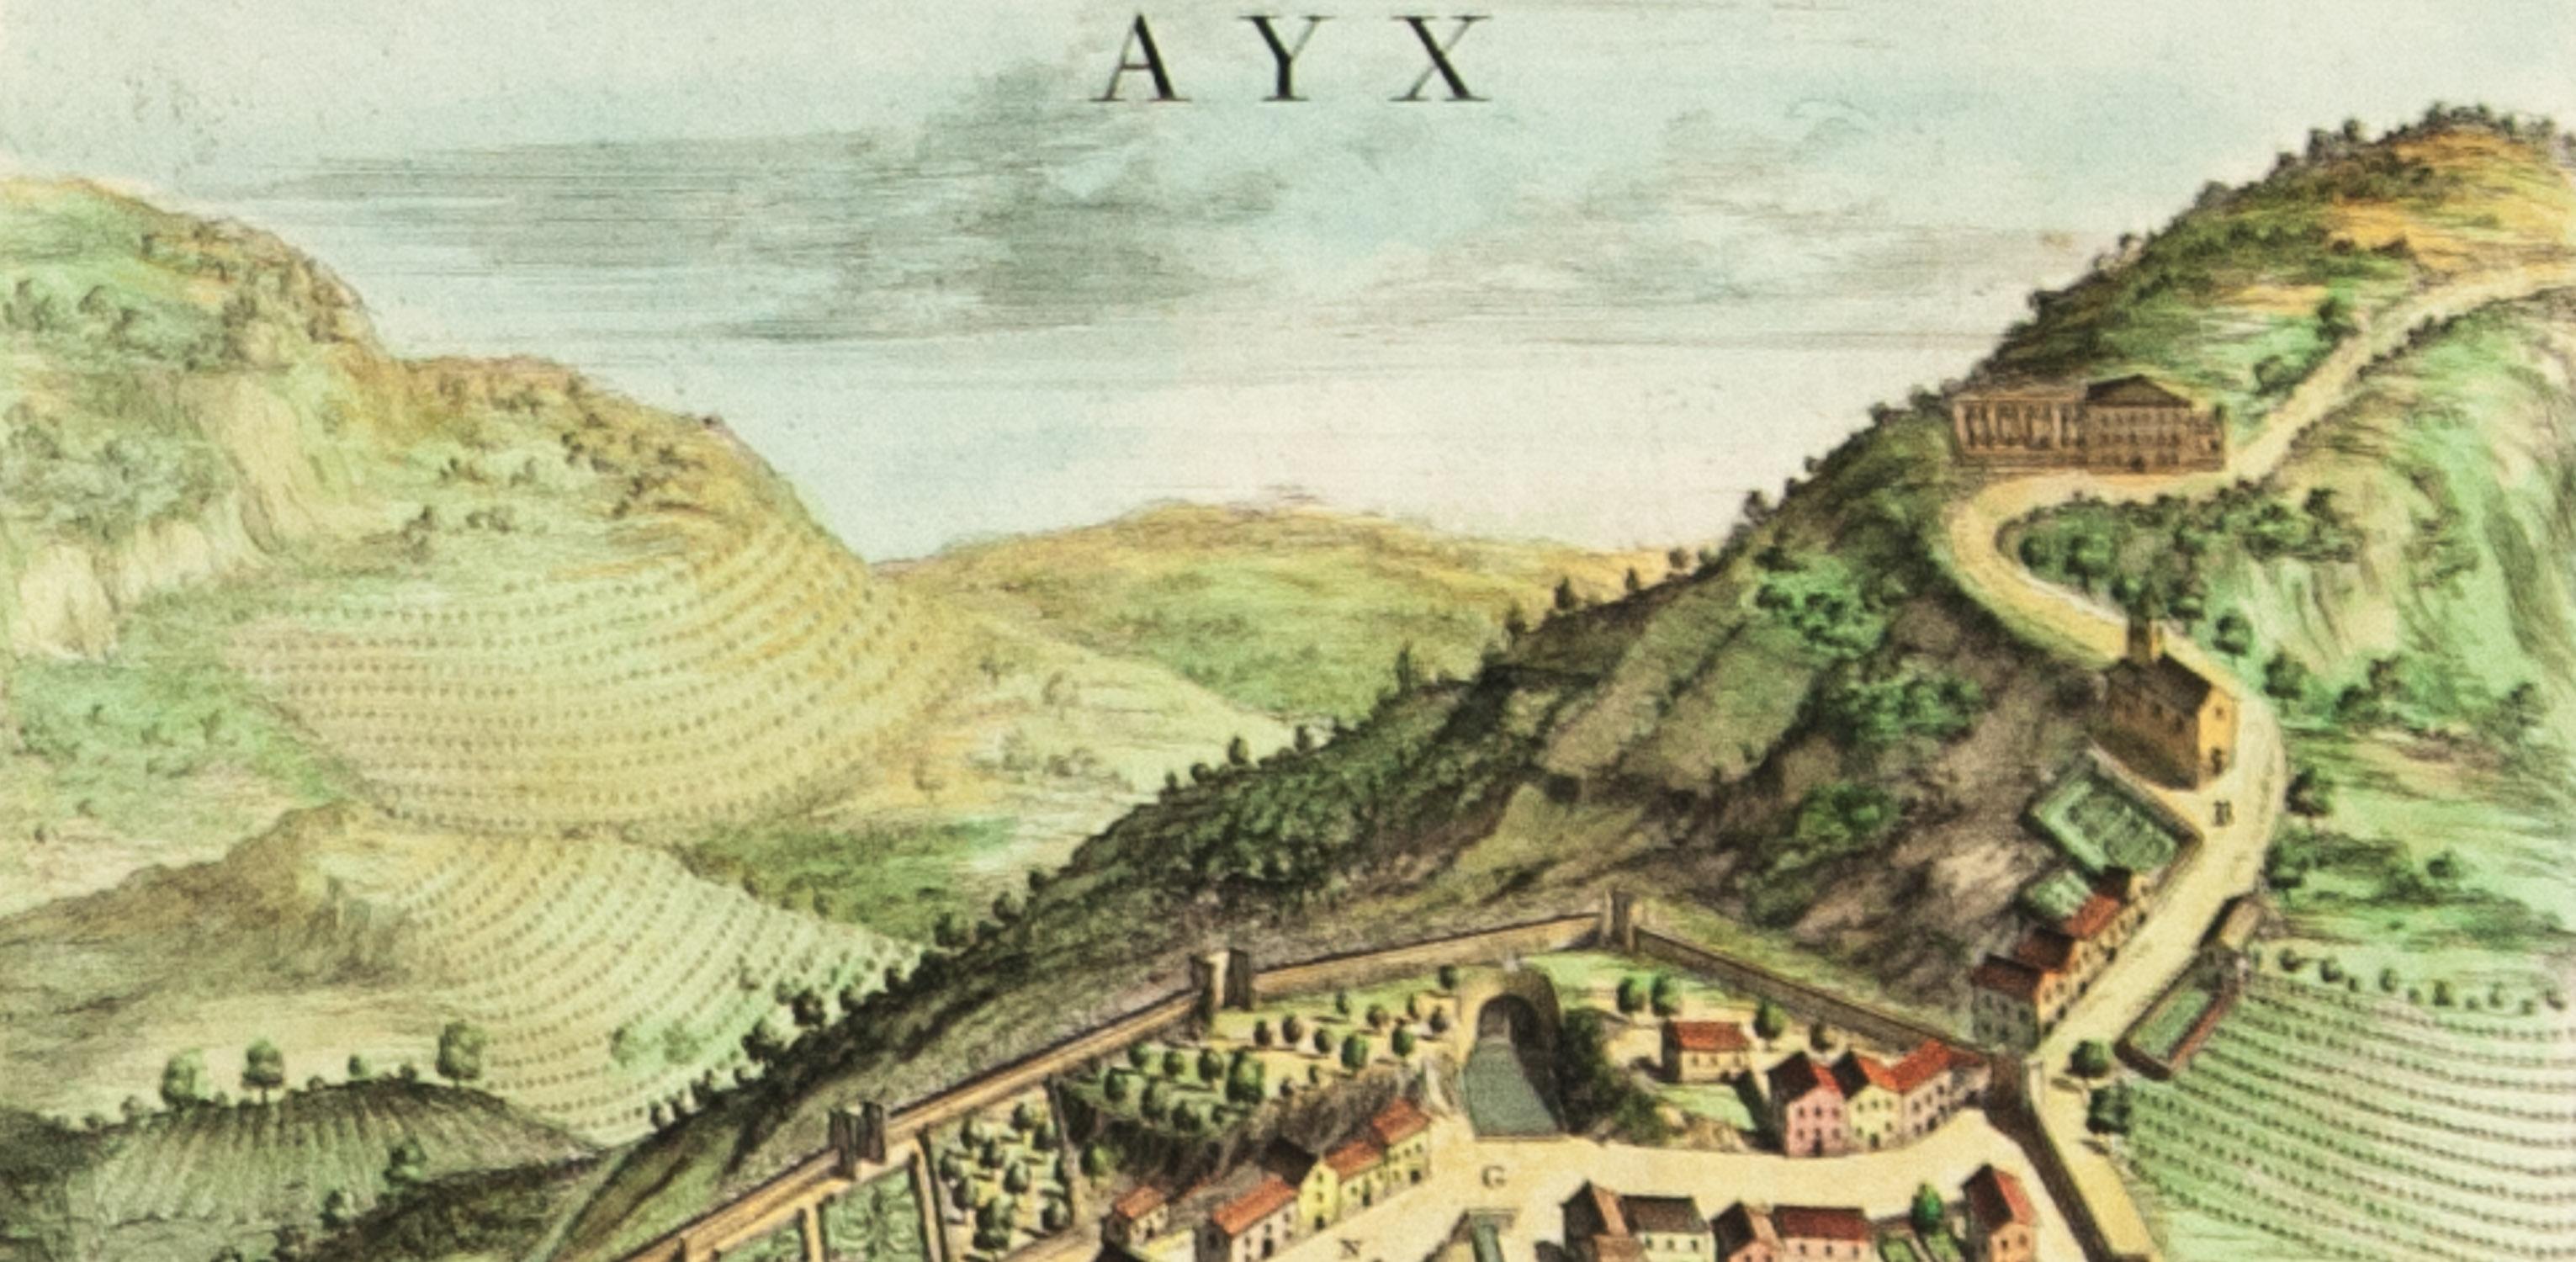 AYX Karte von Aix en Provence, Frankreich von J. Blaeu, 17. Jahrhundert  (Beige), Print, von Joan (Johannes) Blaeu